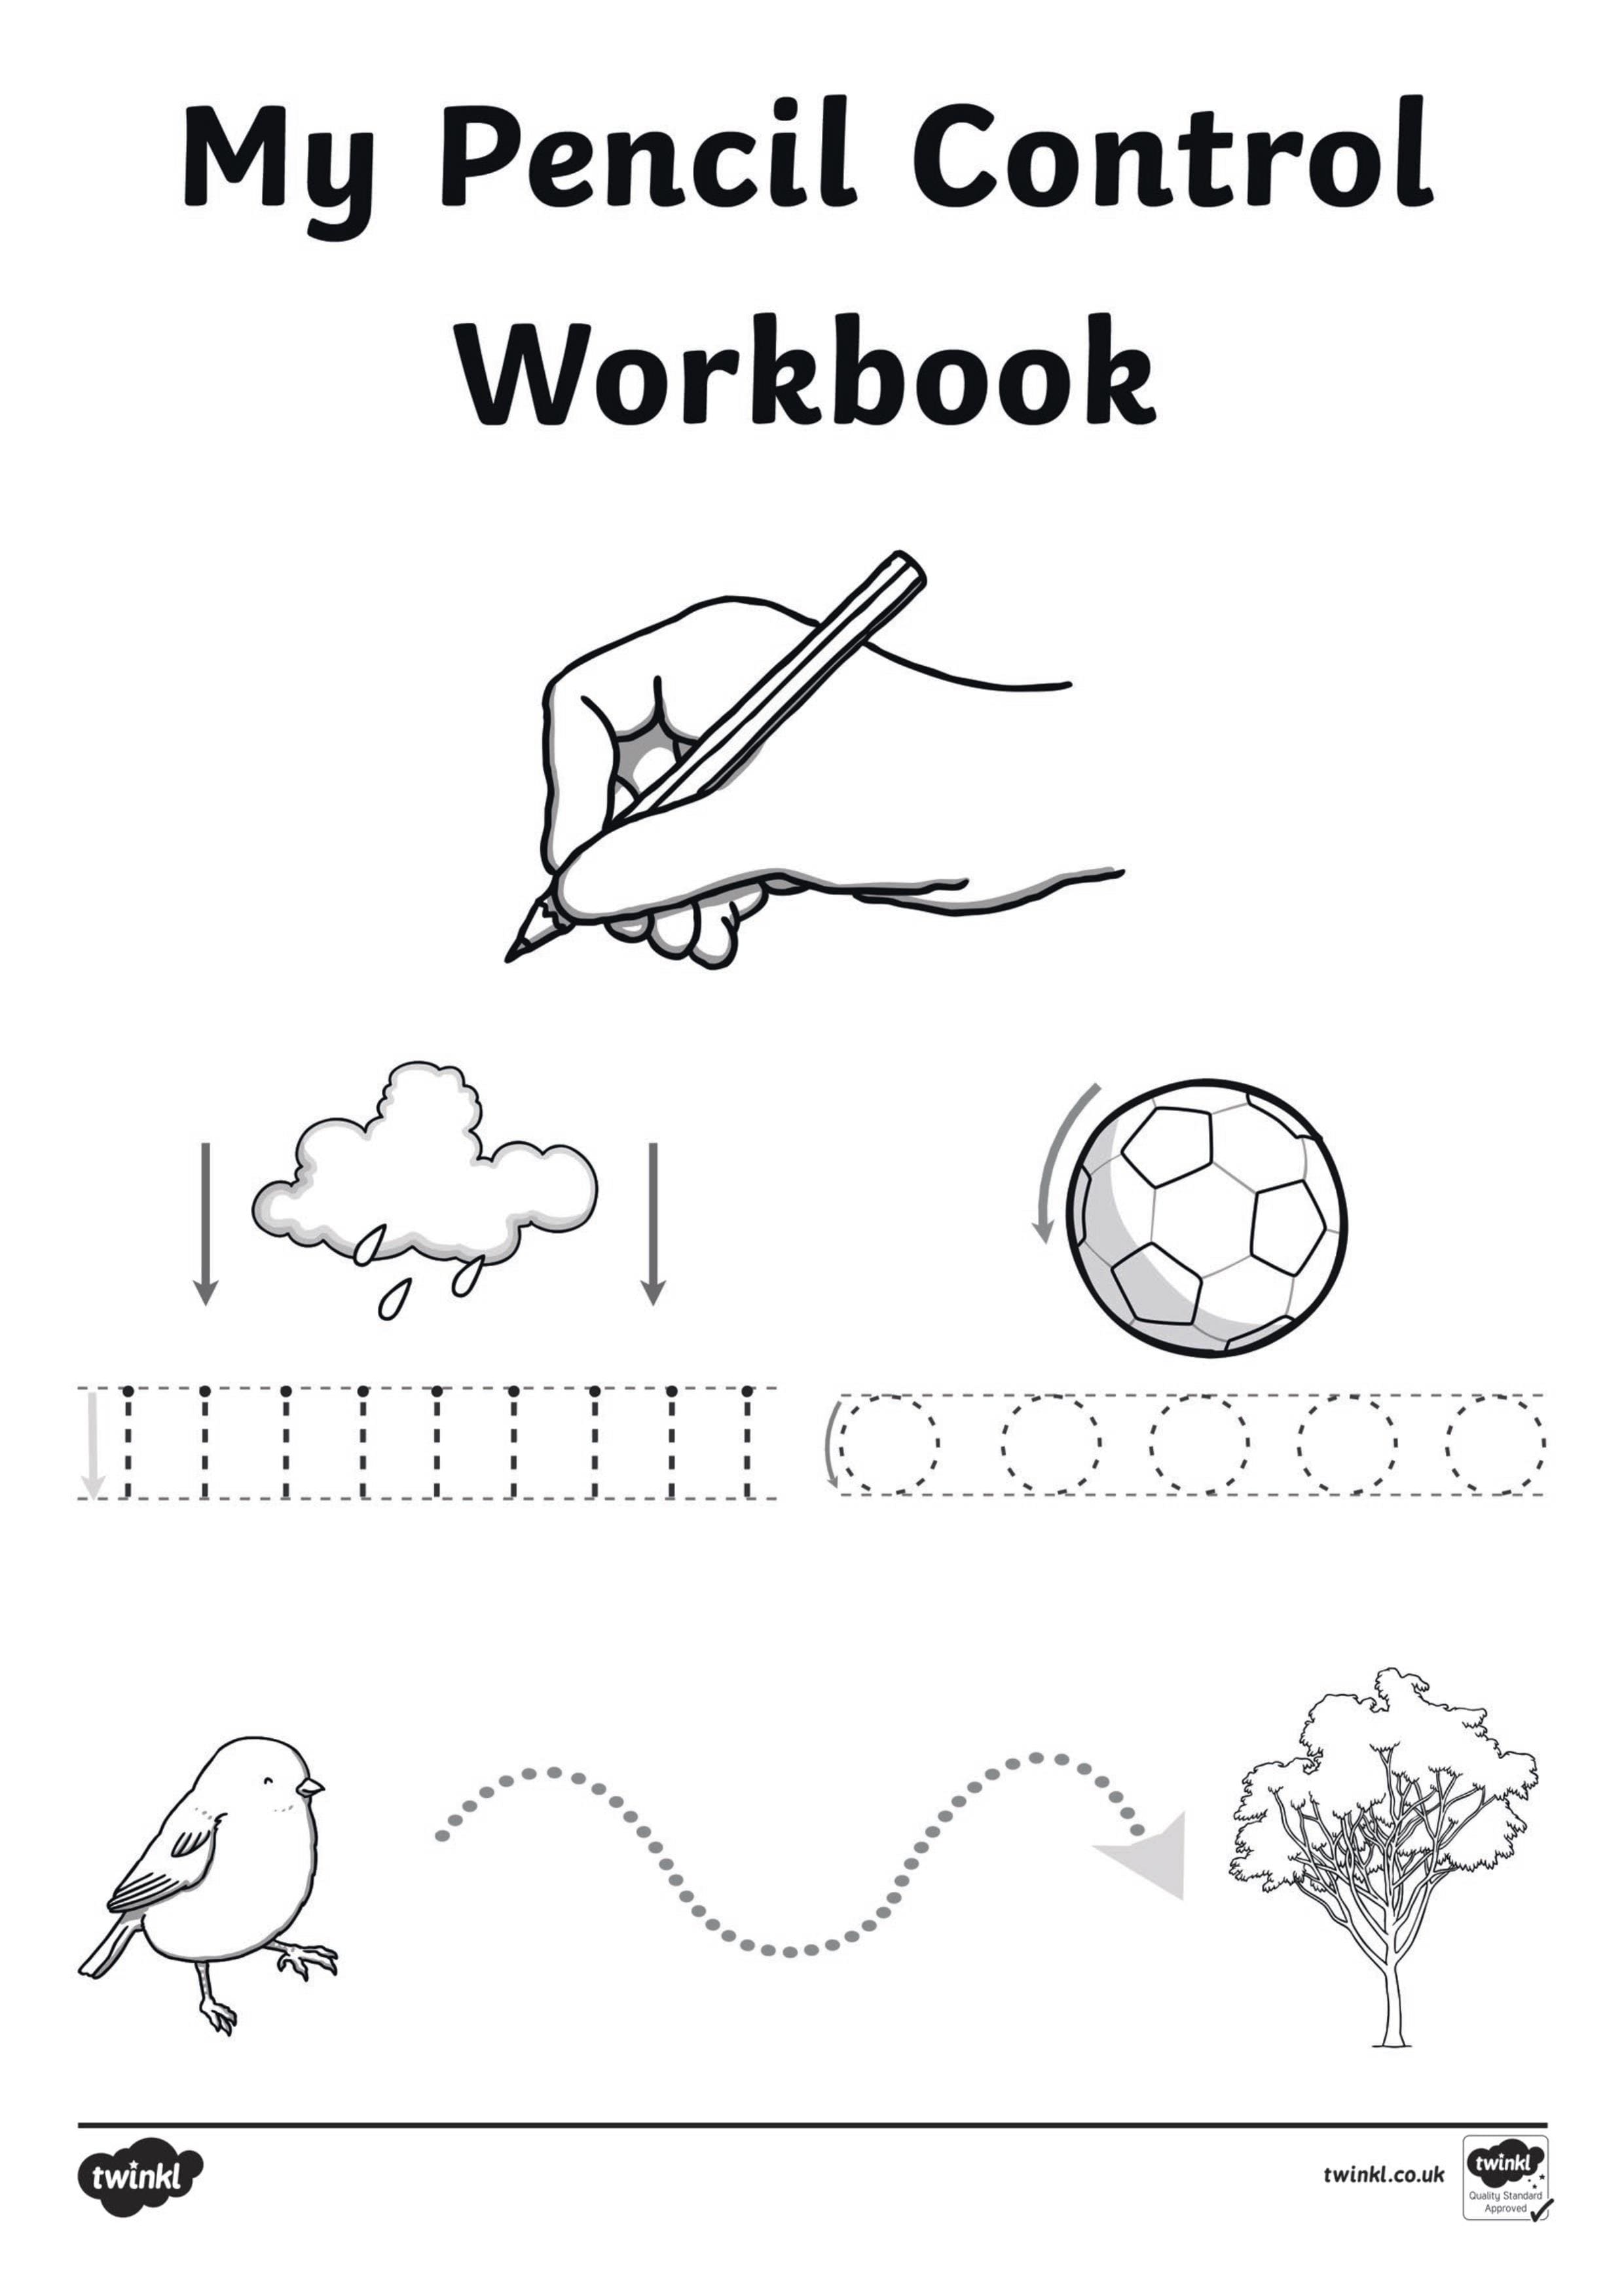 مذكرة My Pencil control workbook لتعليم ما قبل الكتابة